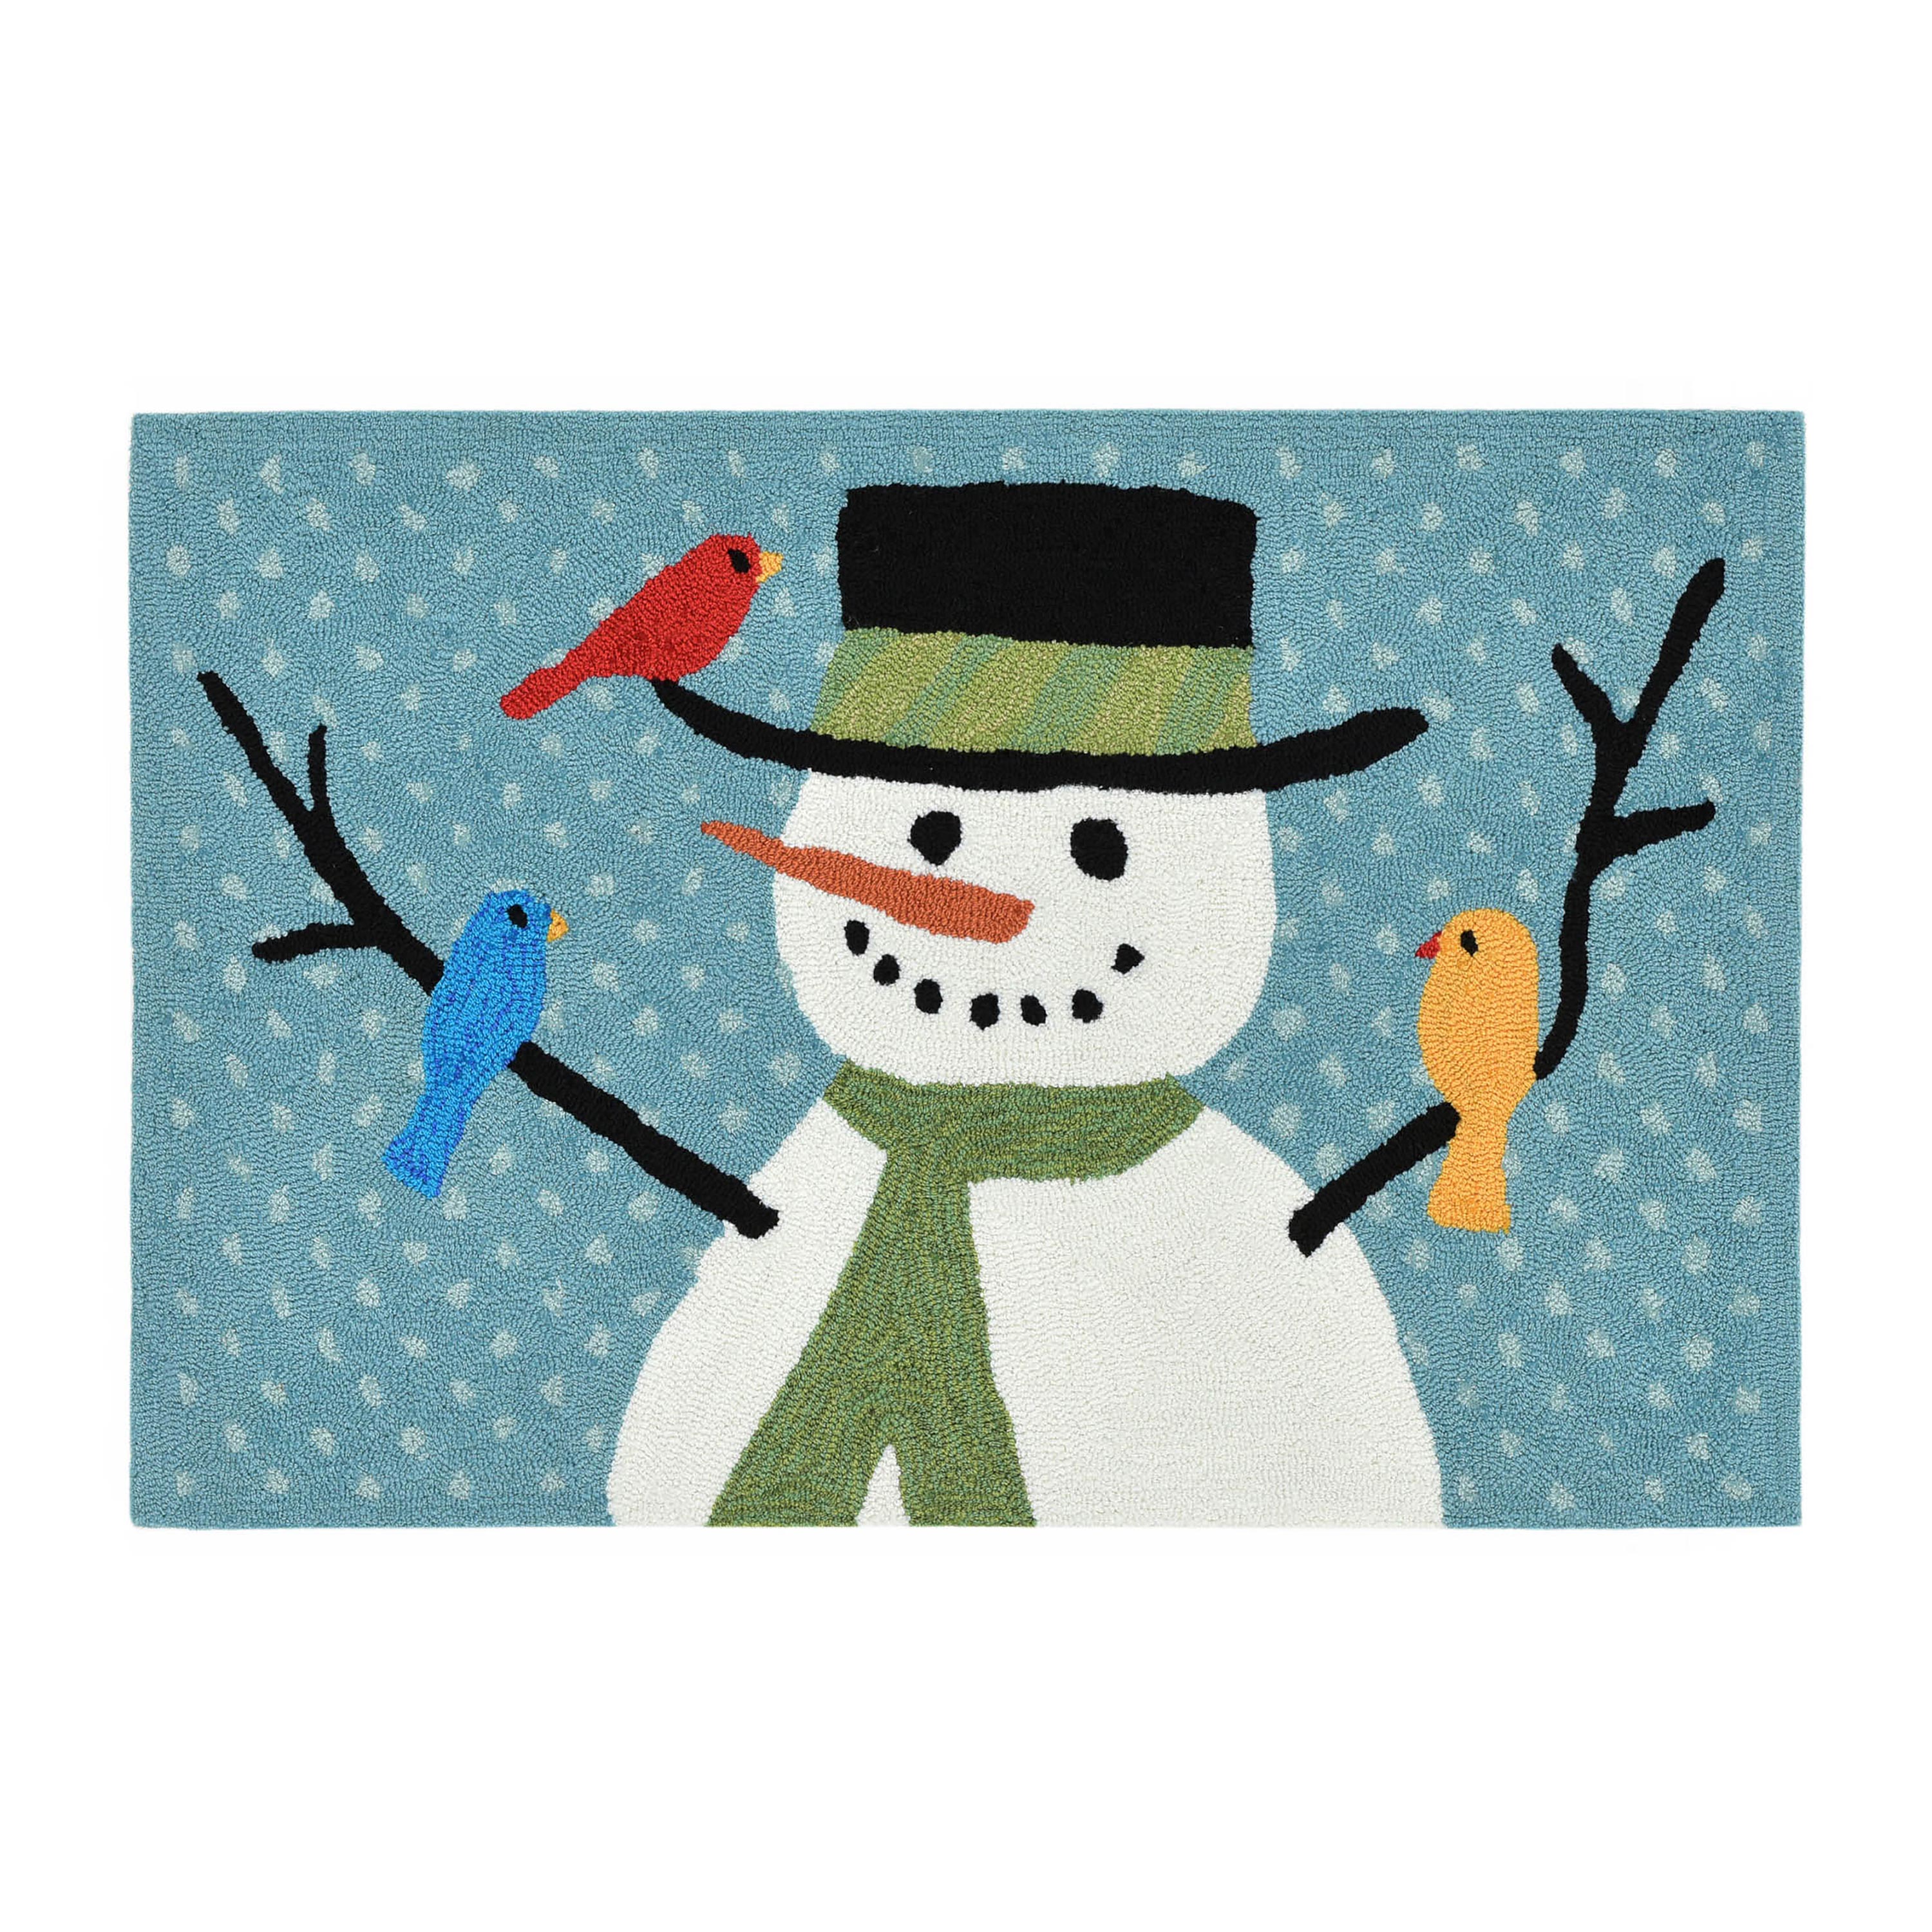 Indoor/Outdoor Hand-Hooked Snowman and Birds Accent Rug, 20" x 30"